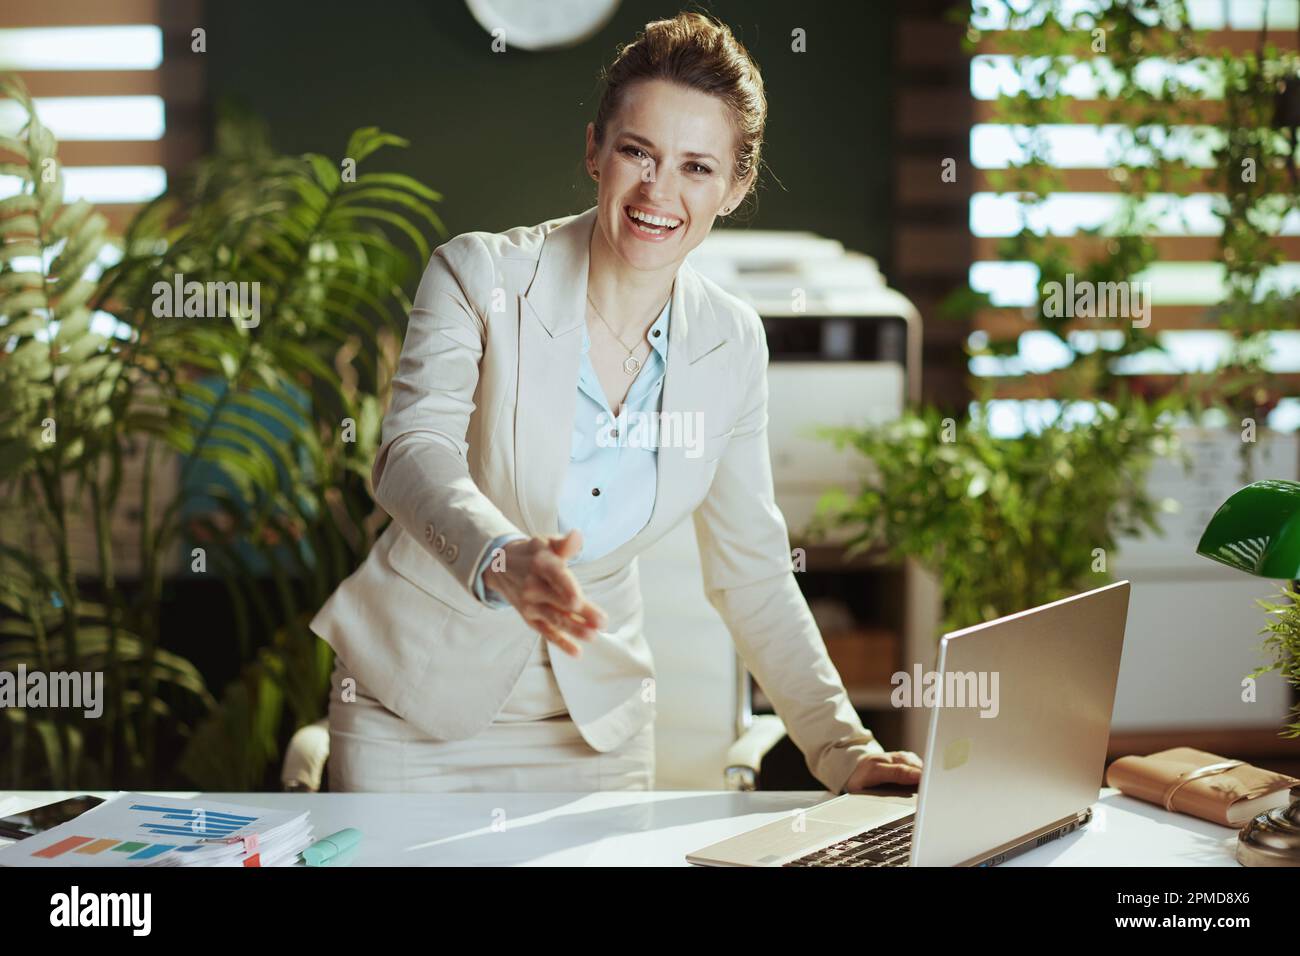 Retrato de mujer de negocios moderna feliz de 40 años en un traje de negocios ligero en la oficina verde moderna con el ordenador portátil dando la mano para un apretón de manos. Foto de stock